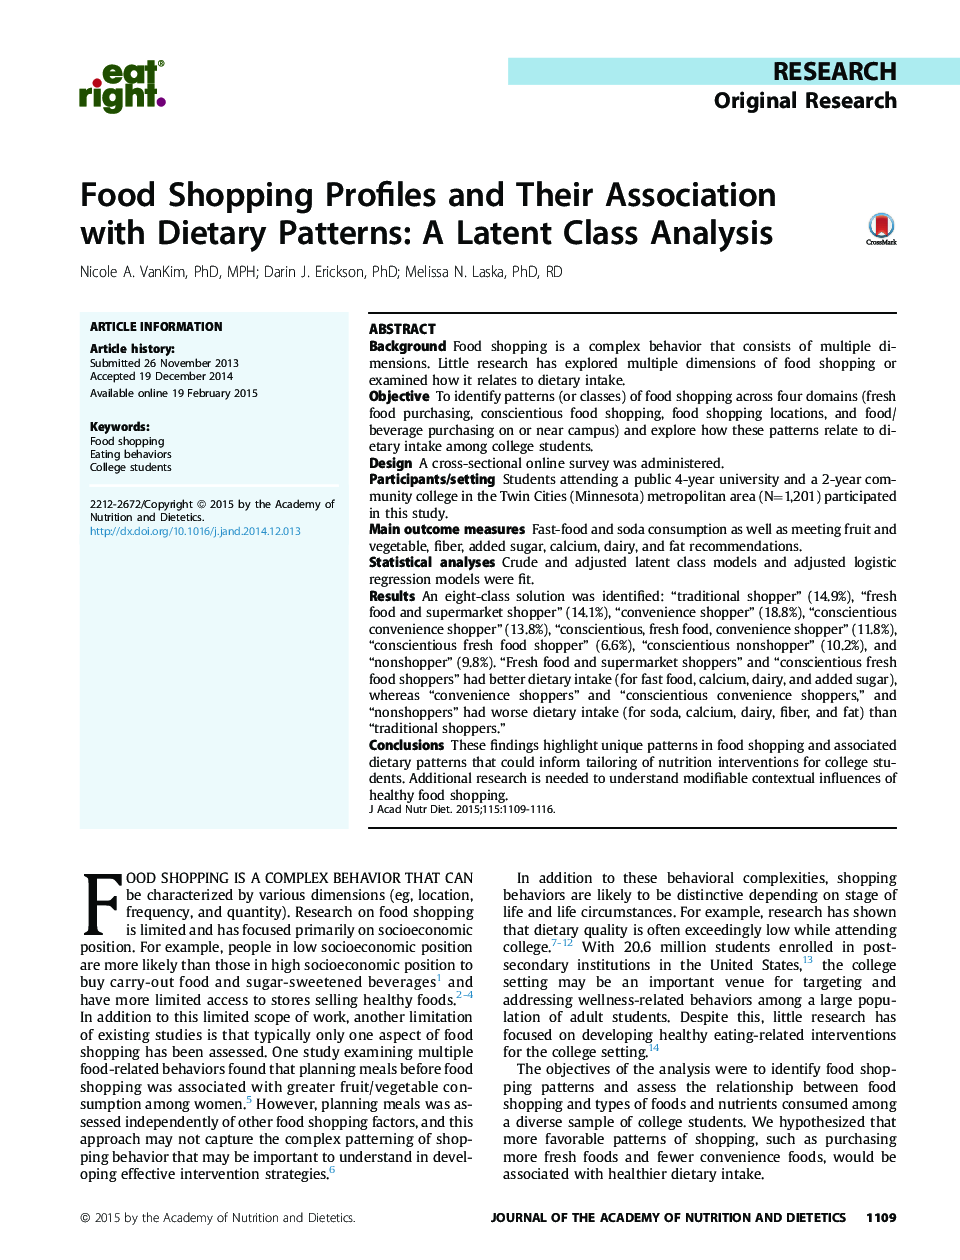 پروفایل های خرید مواد غذایی و ارتباط آنها با الگوهای غذایی: تجزیه و تحلیل کلاس پنهان